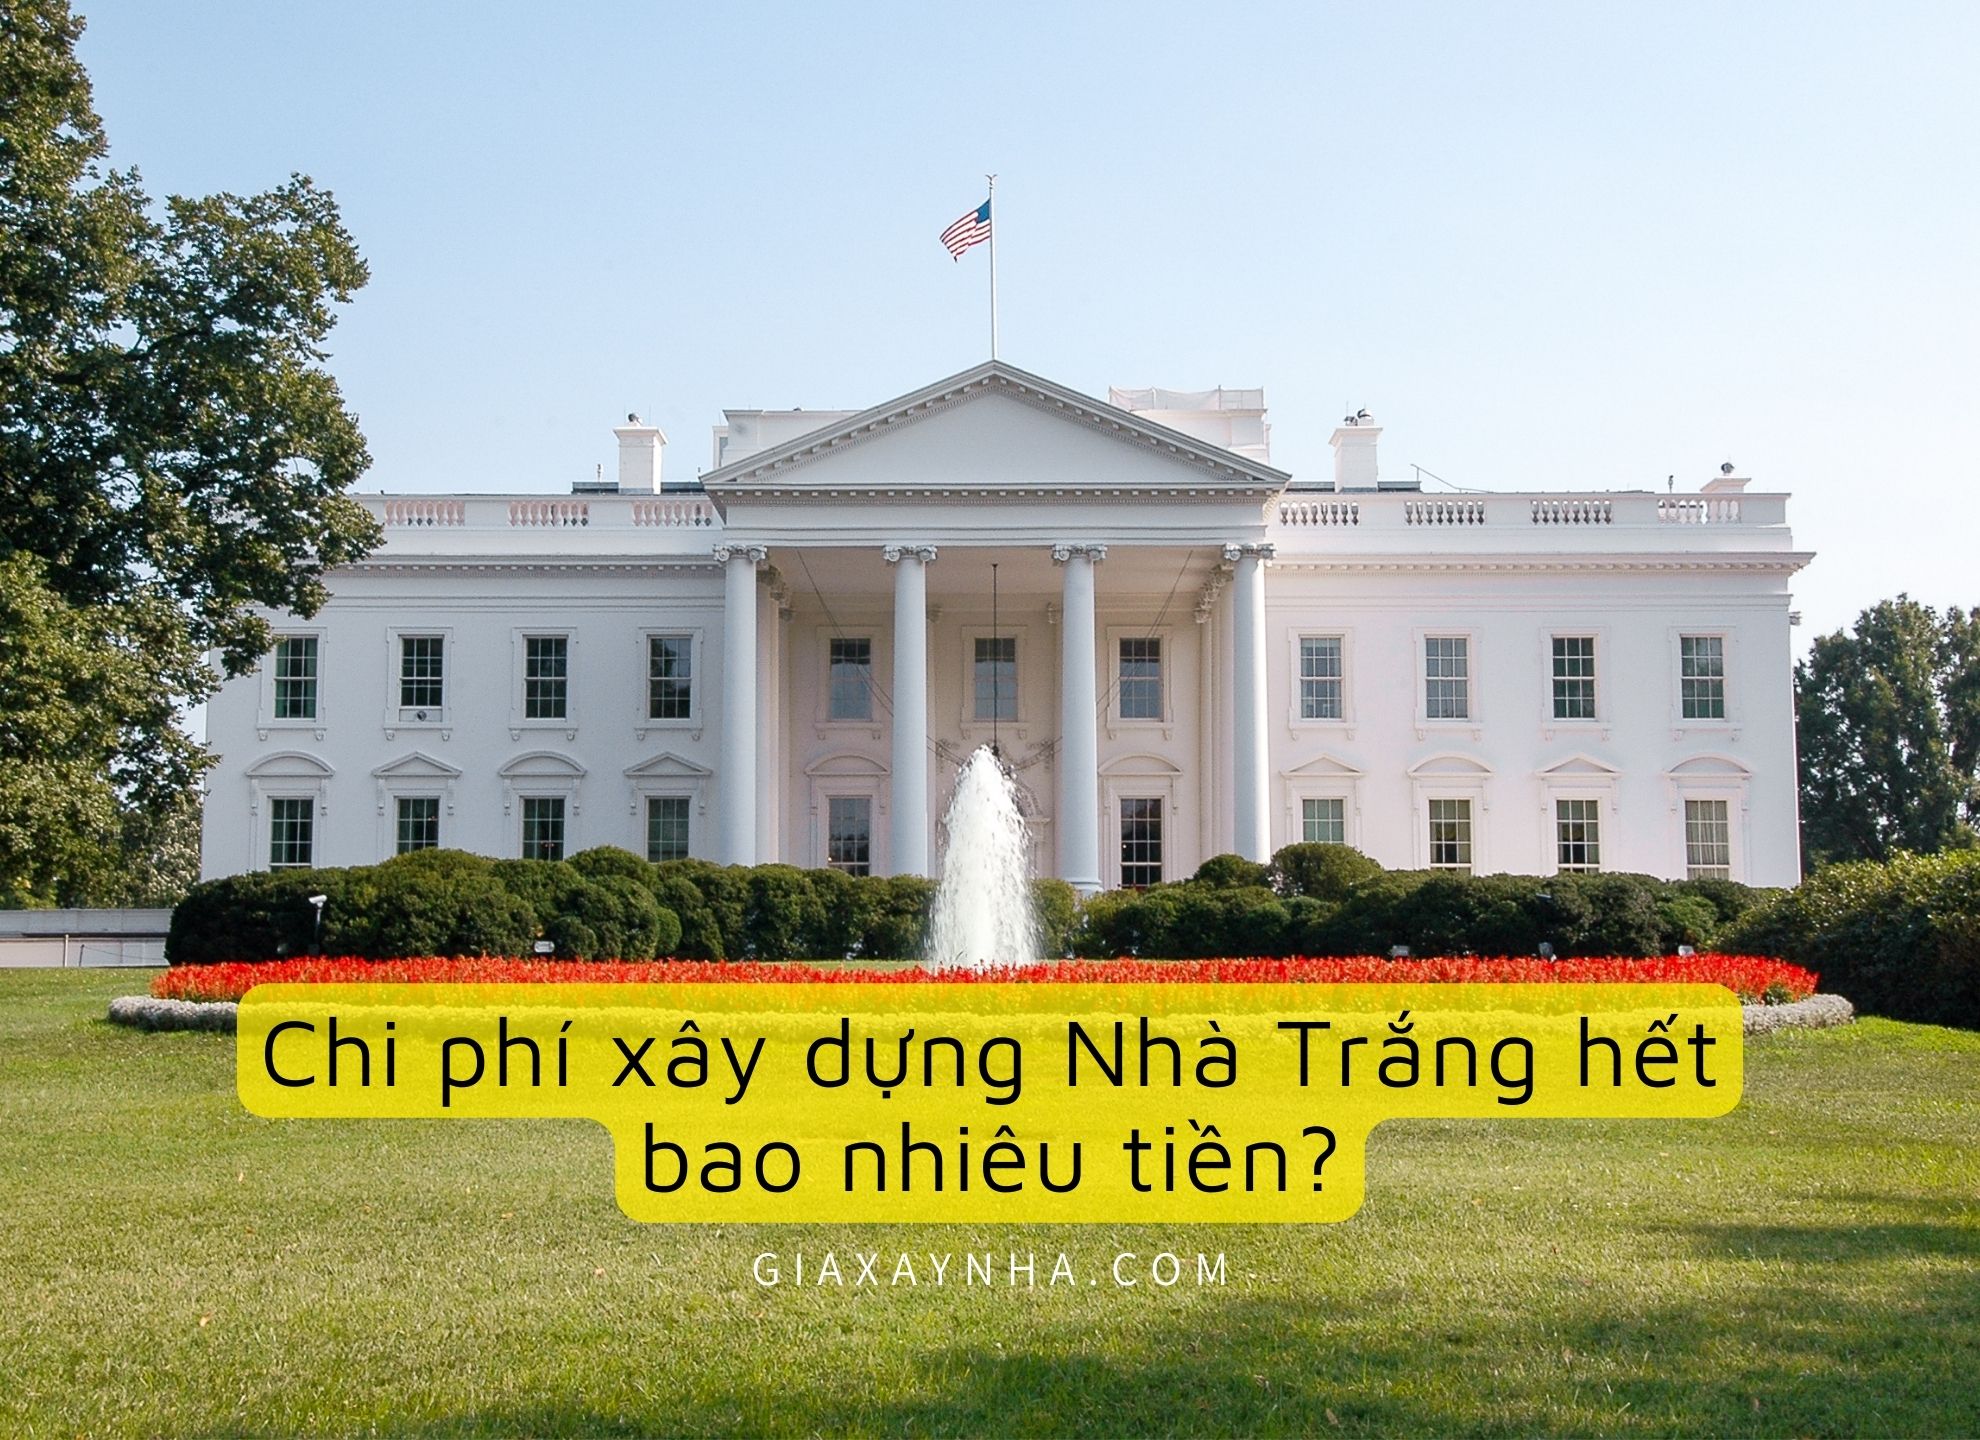 Giaxaynha Chi phi xay dung Nha Trang la bao nhieu